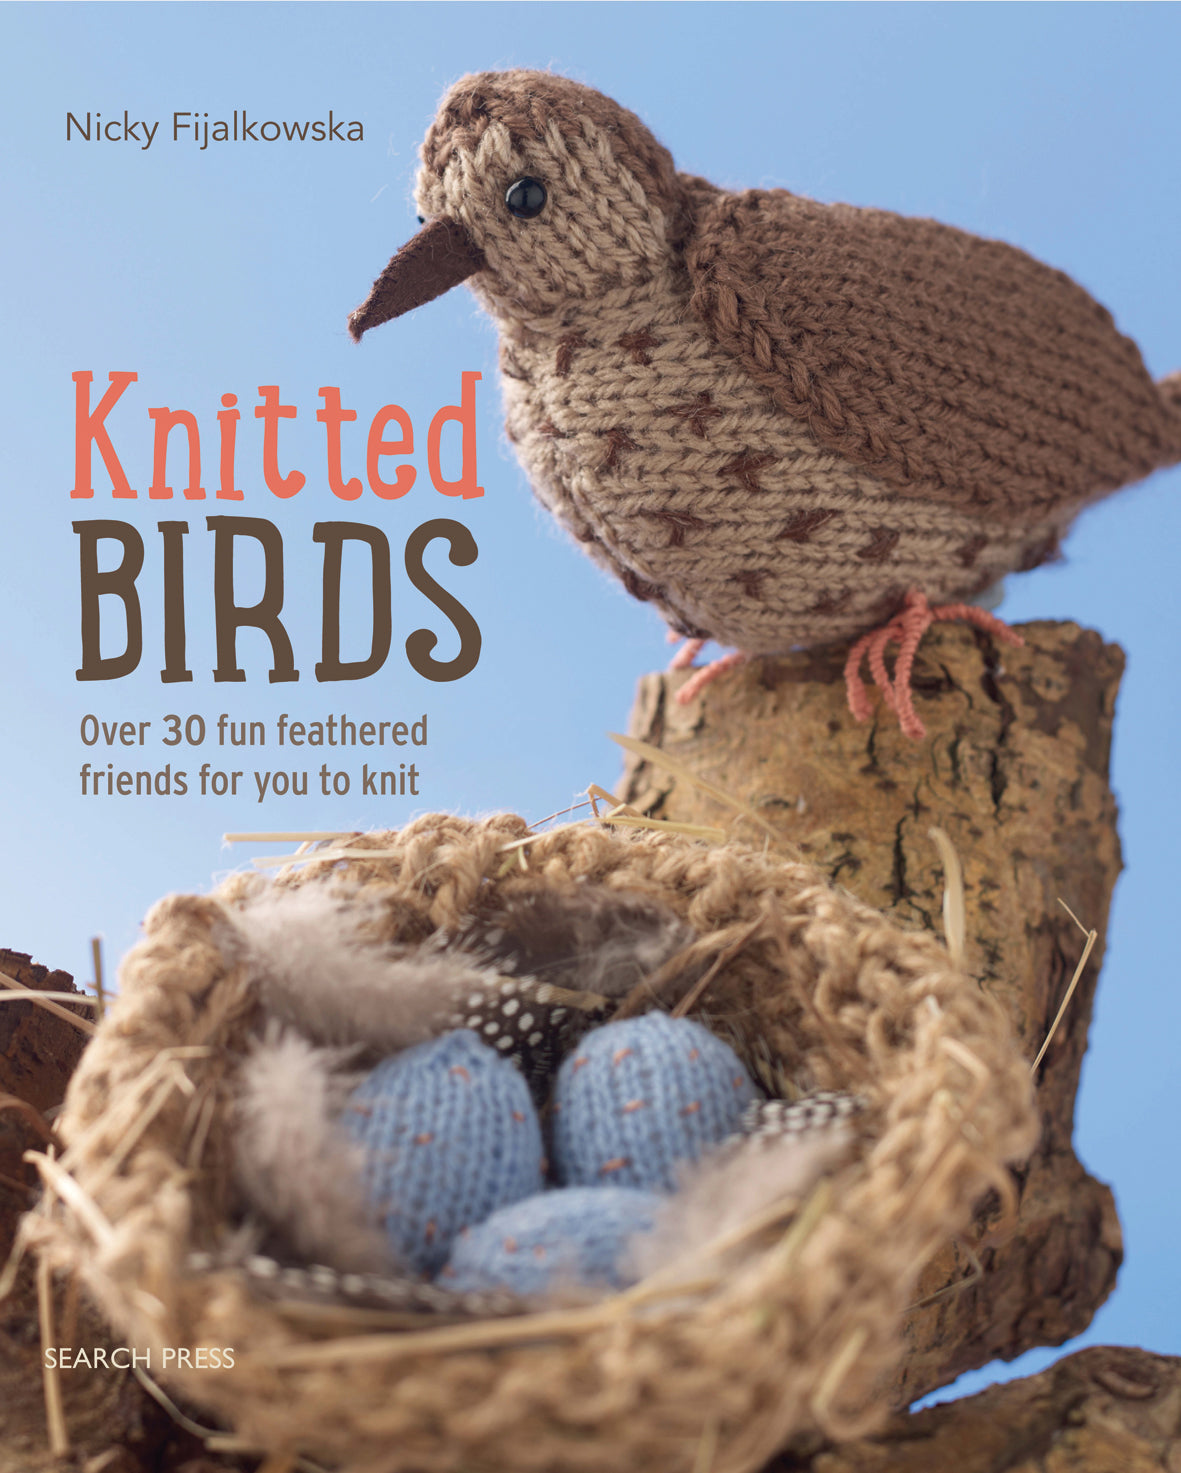 Knitted Birds by Nicky Fijalkowska